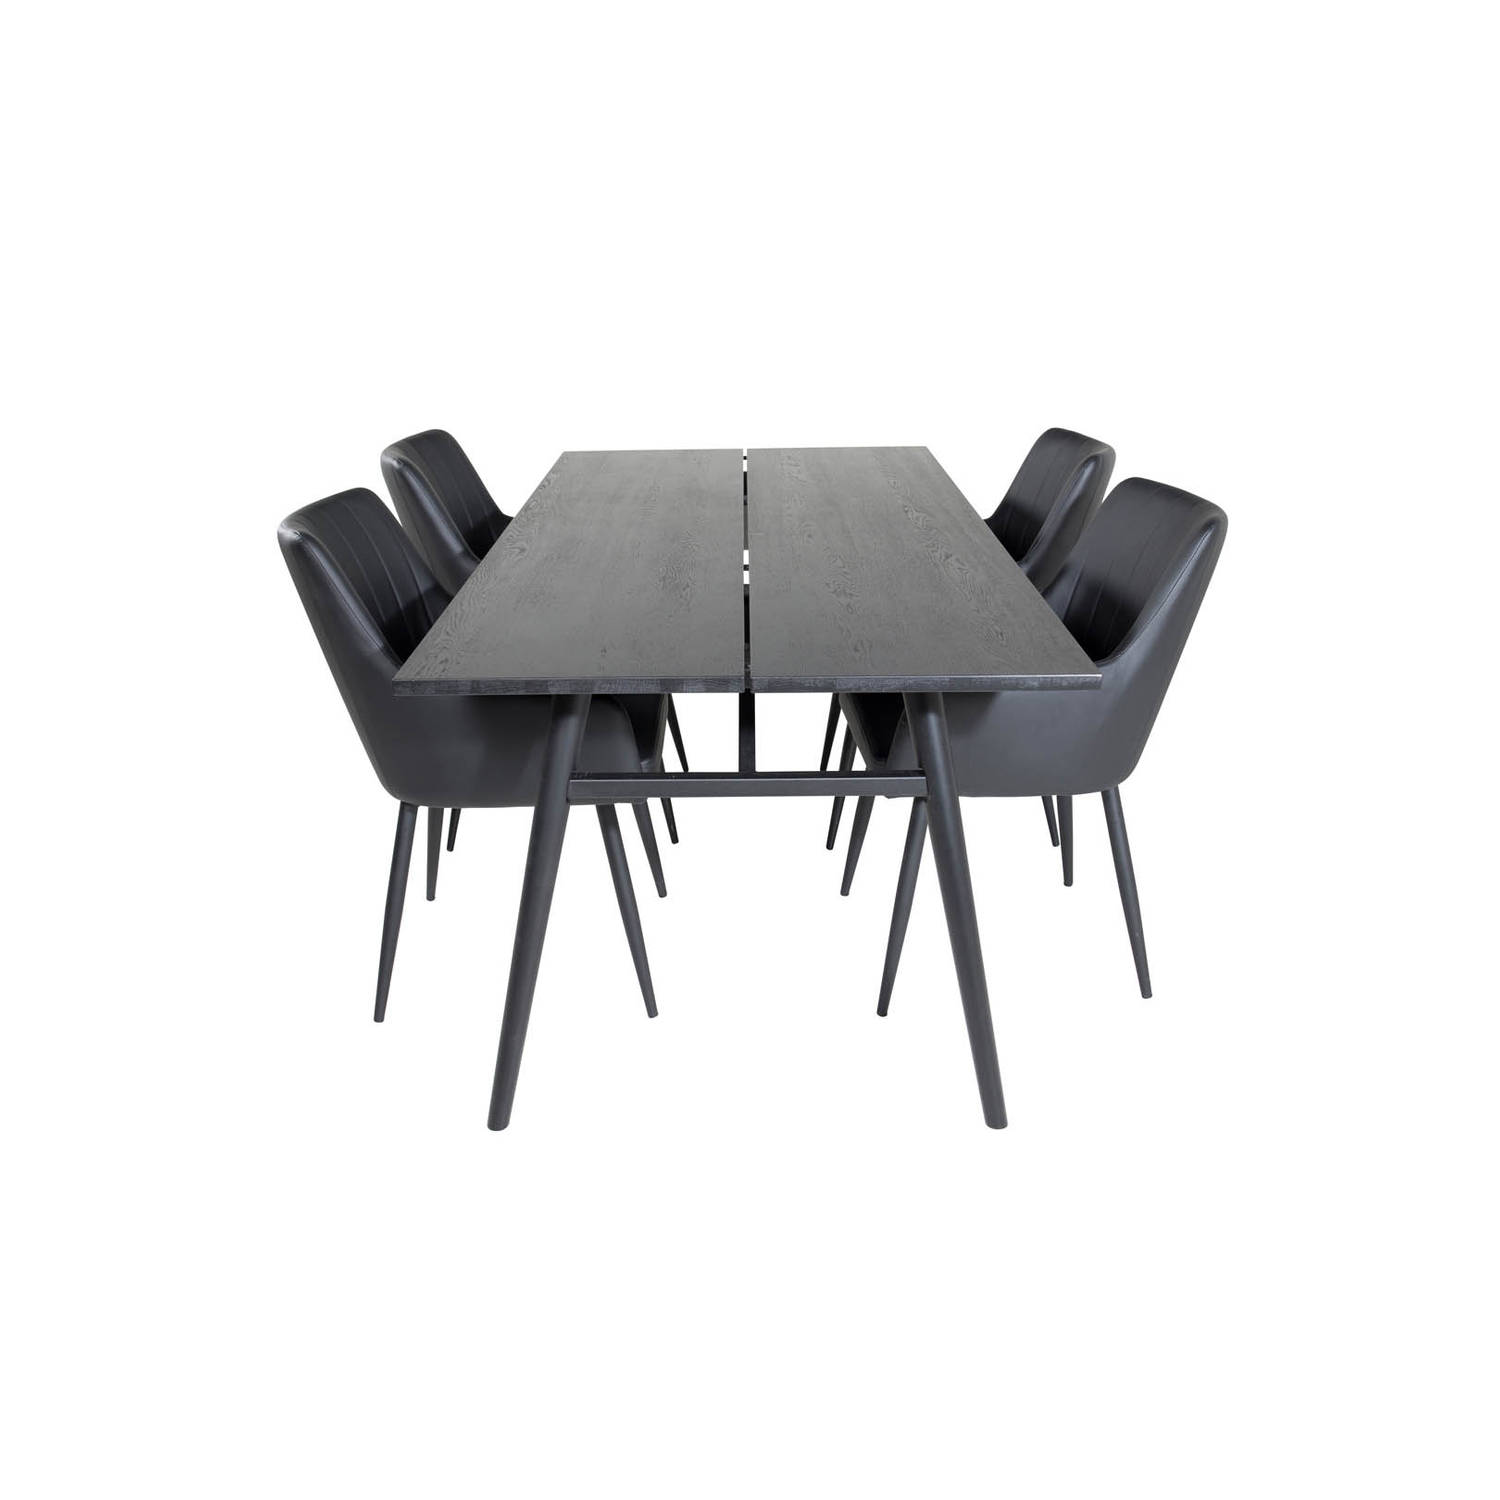 Sleek eethoek eetkamertafel uitschuifbare tafel lengte cm 195 / 280 zwart en 4 Comfort eetkamerstal PU kunstleer zwart.